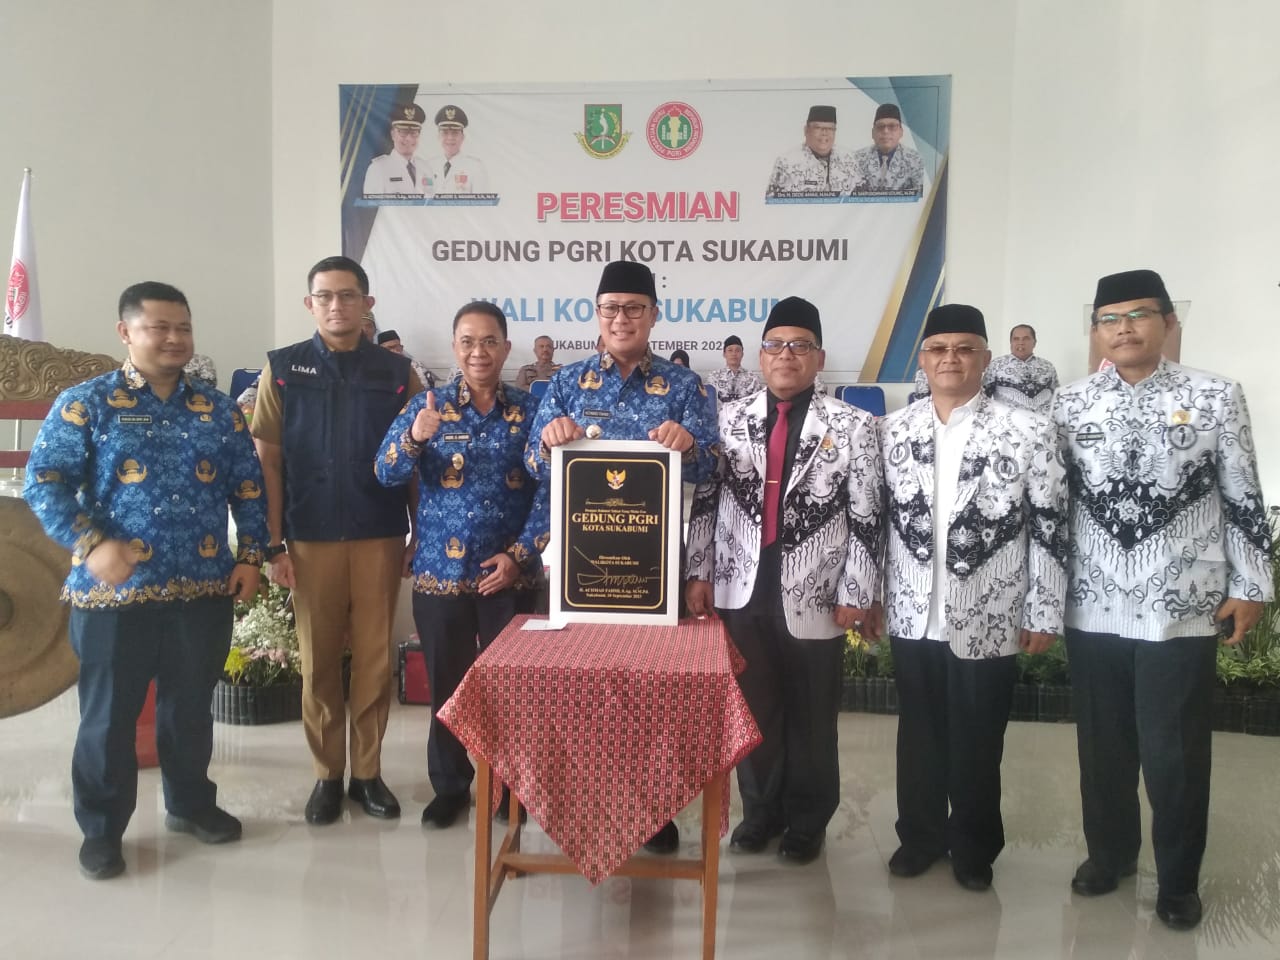 Peresmian Gedung Baru PGRI Kota Sukabumi yang Diresmikan oleh Bapak Walikota Sukabumi